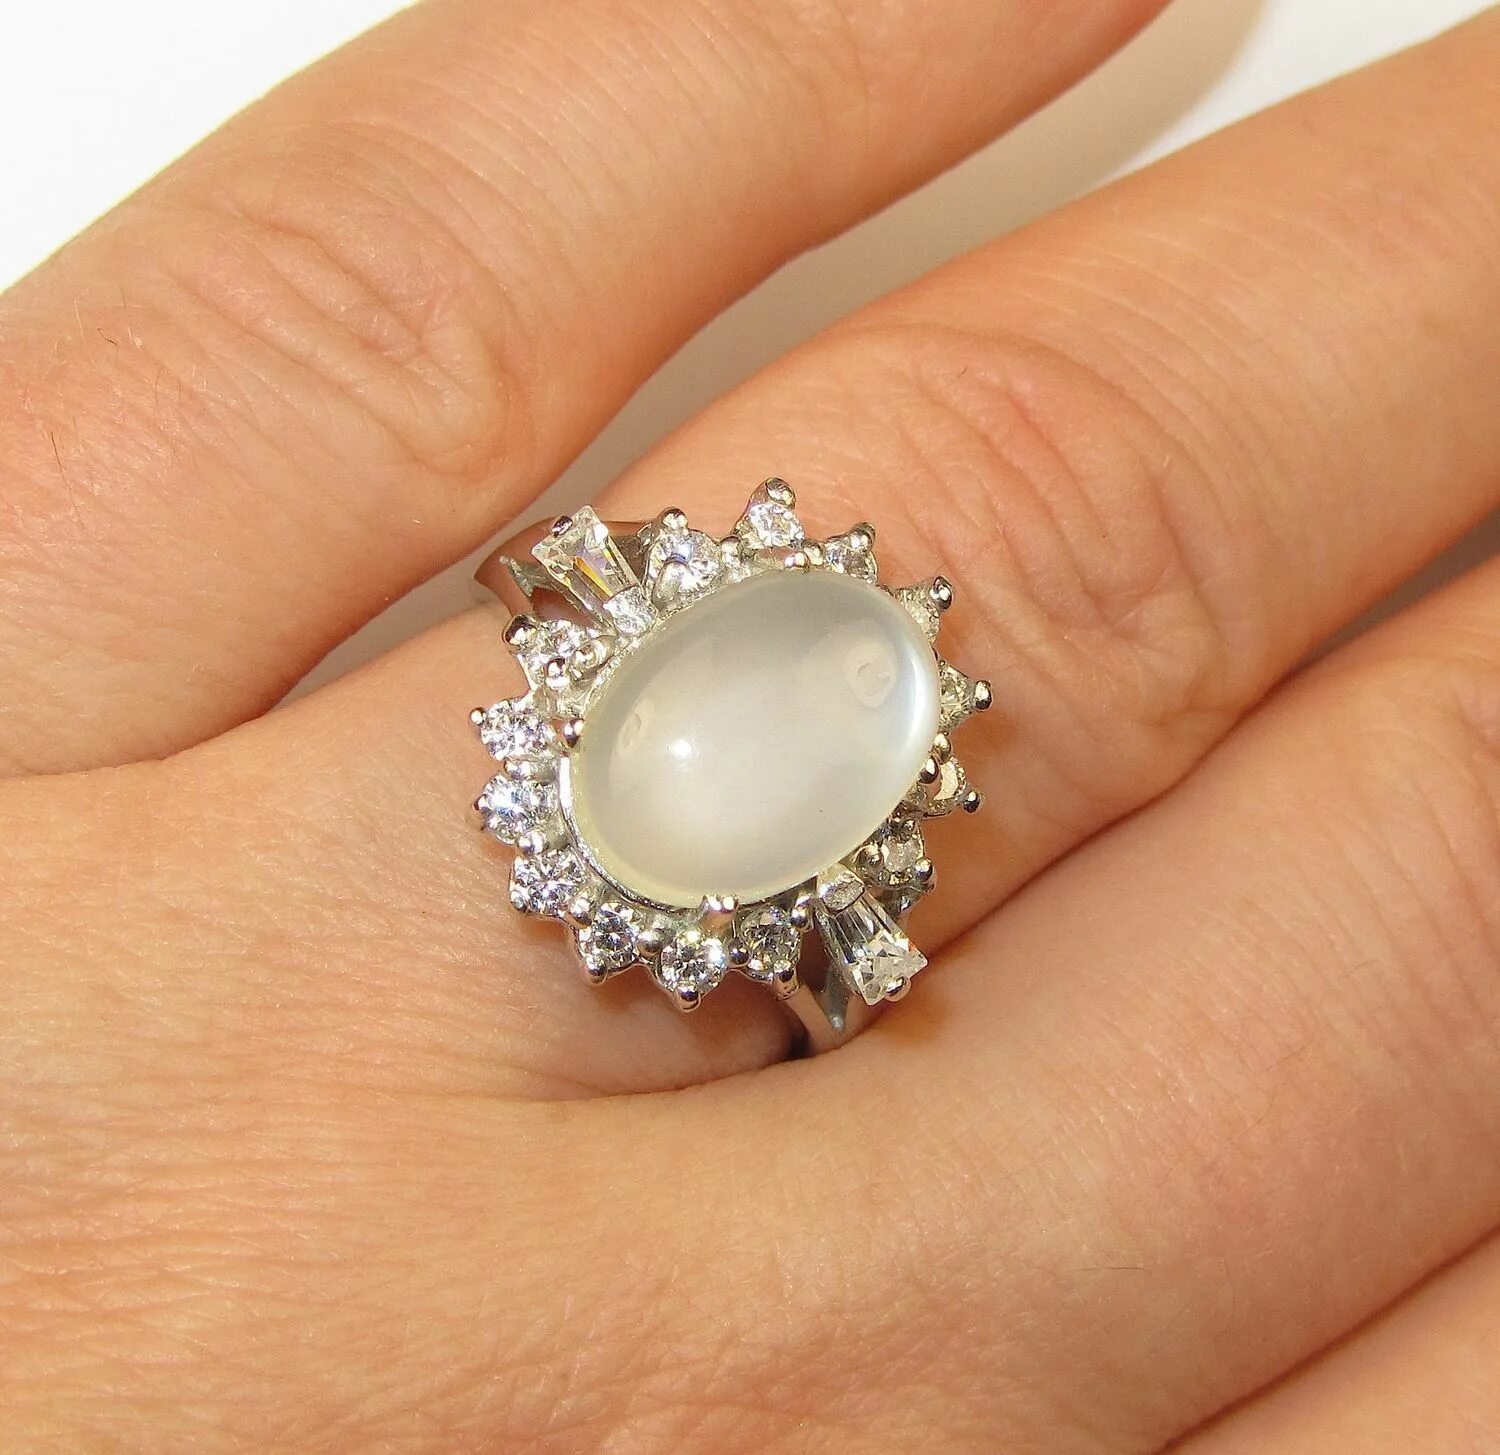 Кольцо с длинным камнем. Кольцо с камнем серебро. Золотое кольцо с лунным камнем. Серебряное кольцо с крупным камнем.